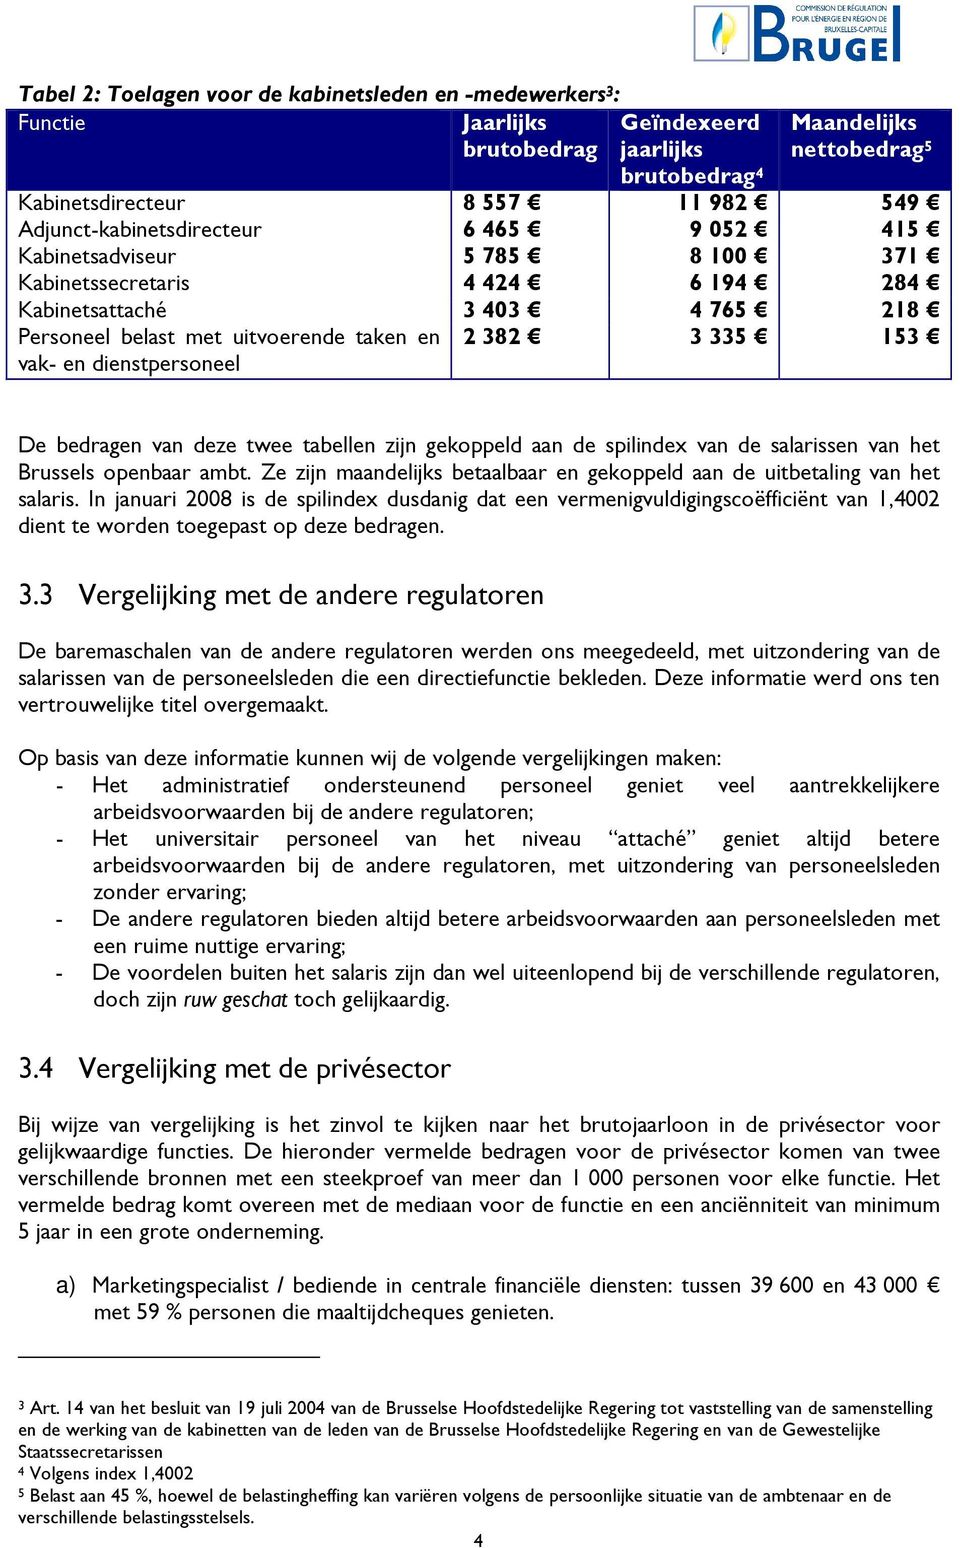 dienstpersoneel 2 382 3 335 153 De bedragen van deze twee tabellen zijn gekoppeld aan de spilindex van de salarissen van het Brussels openbaar ambt.